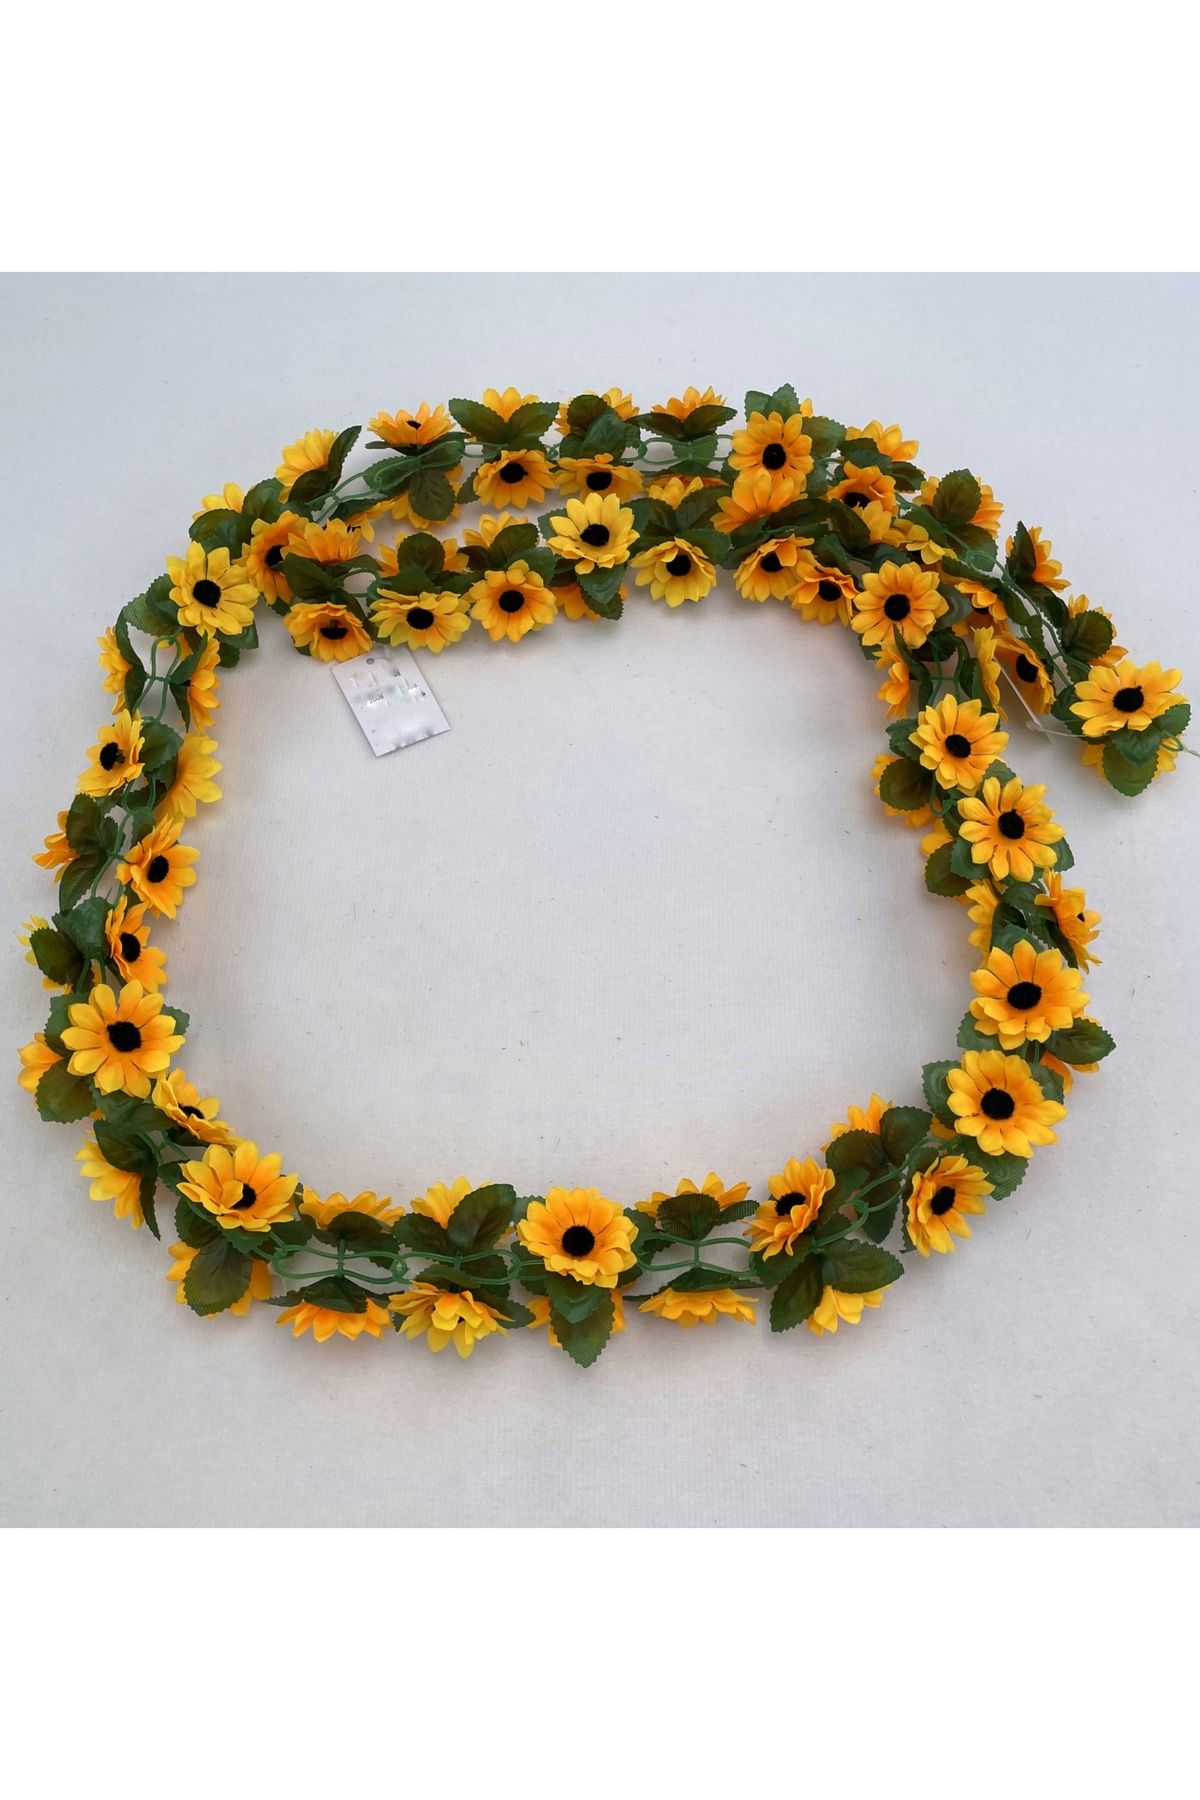 MD Aspiz Flowers Yapay Ayçiçeği Sunflower Bitki Demeti .. Pampas Sarmaşık Ayçiçek Sarkan Ay Çiçeği Lale Yağı Kuru Gul